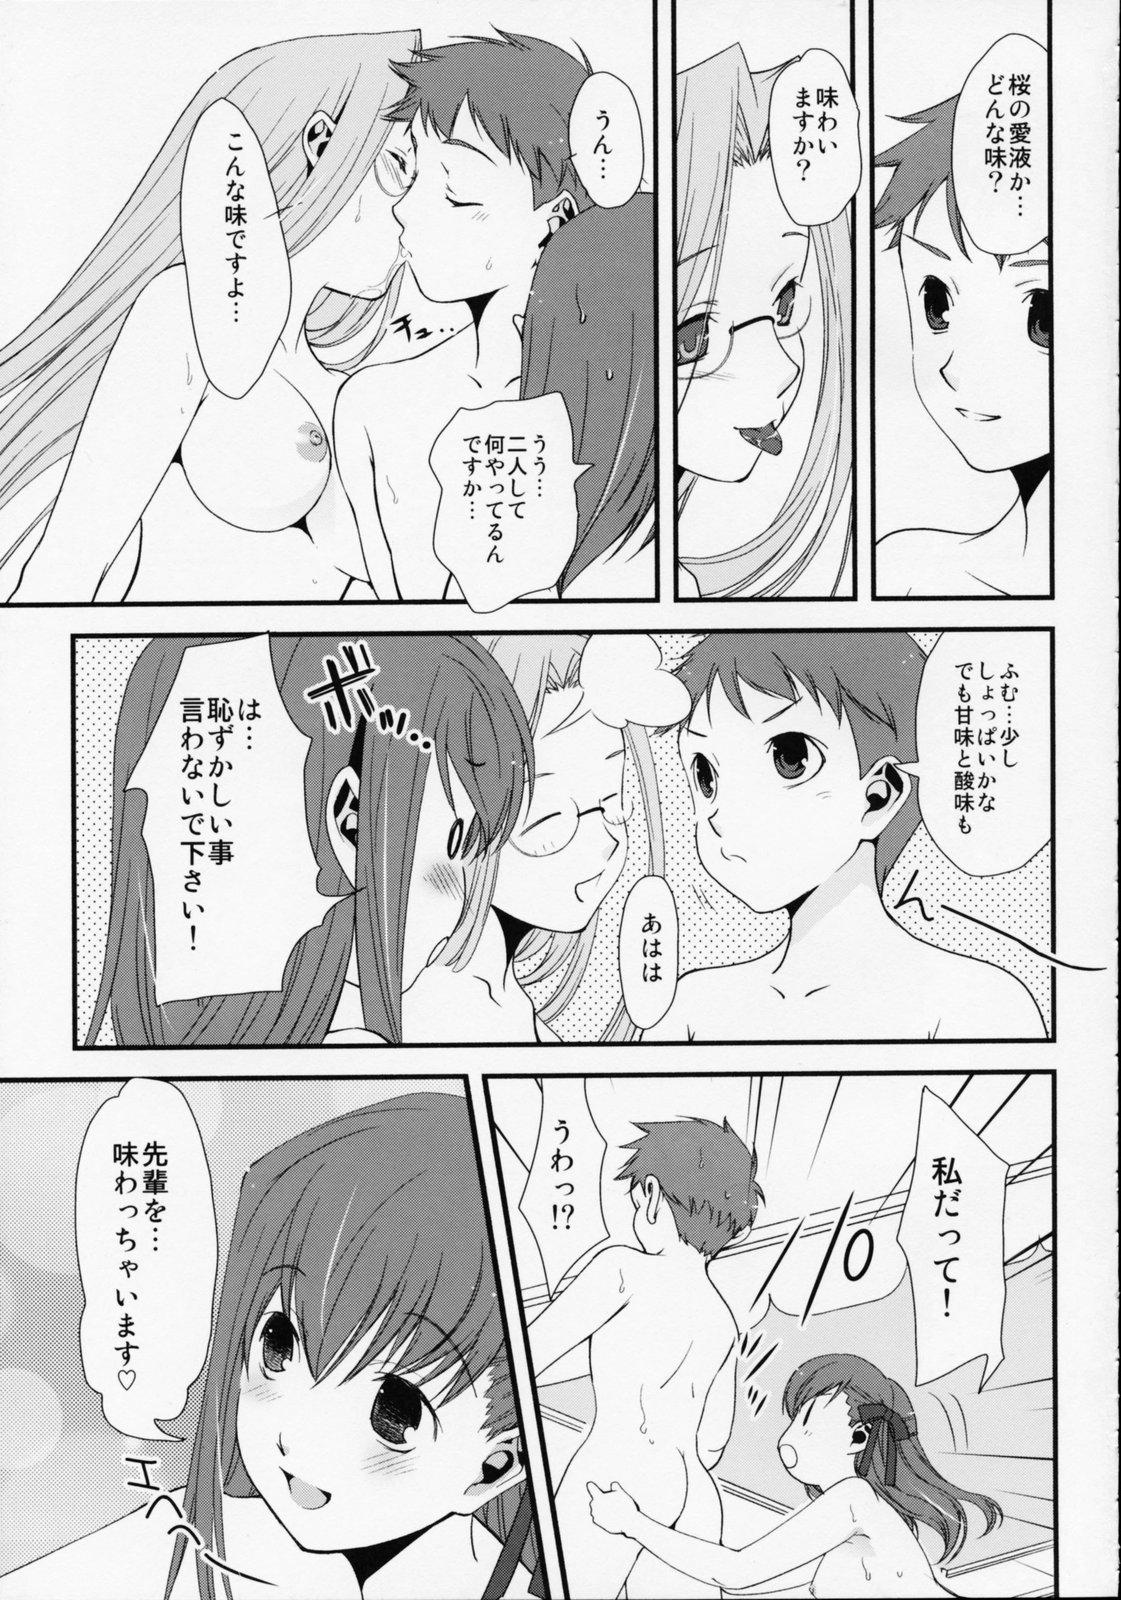 Cougars (C68) [Renai Mangaka (Naruse Hirofumi)] SSS - She goes to See the Sea - Kanojo wa Umi o Miniiku (Fate/stay night) - Fate stay night Ass Sex - Page 11